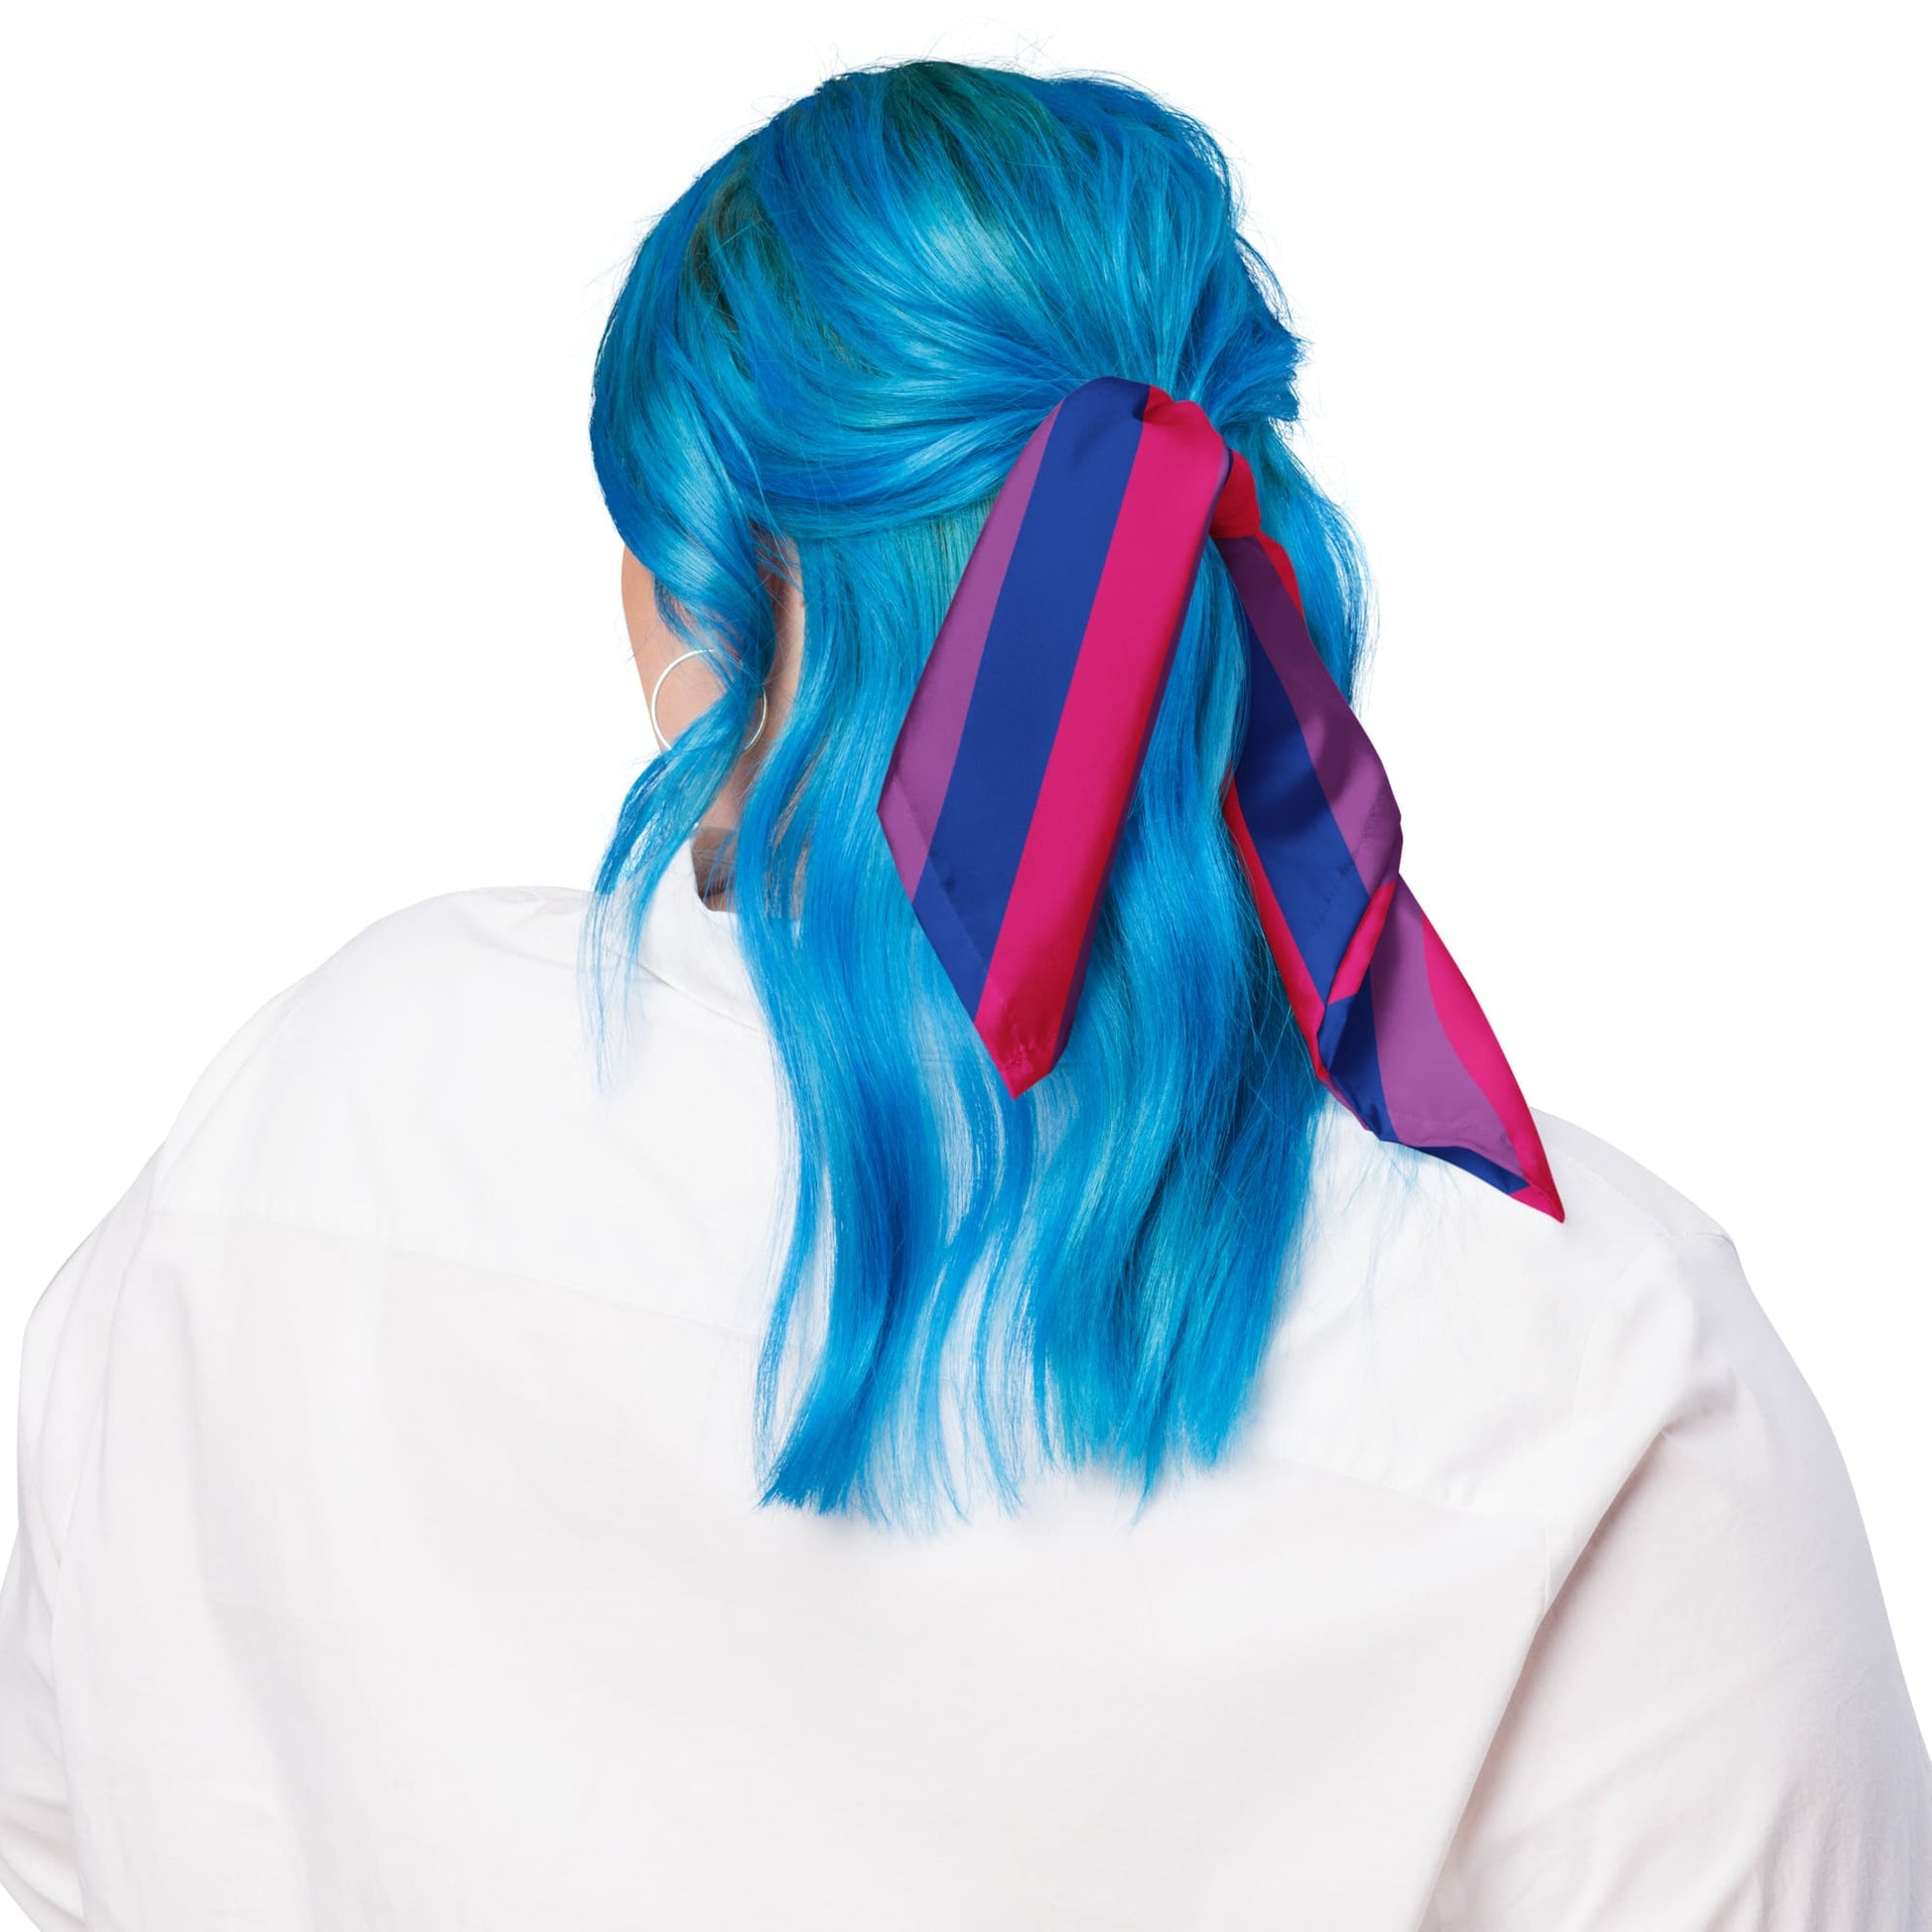 bisexual bandana, as hair ribbon